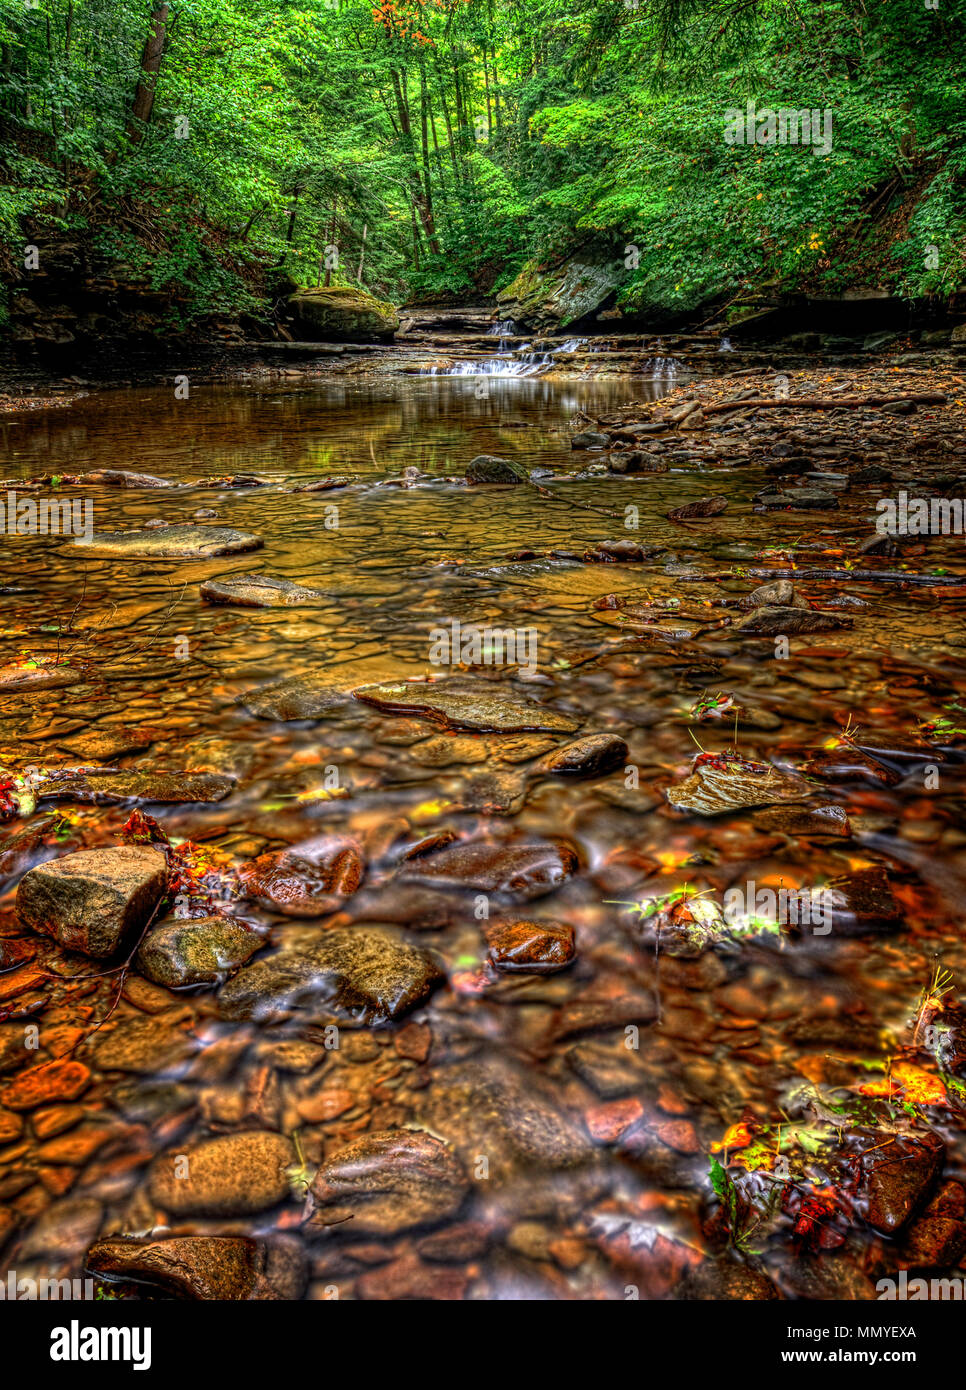 Les roches colorées dans l'eau claire de Brandywine Creek dans le parc national de Cuyahoga Valley dans l'Ohio. Vu ici en été avec un faible débit d'eau. Banque D'Images